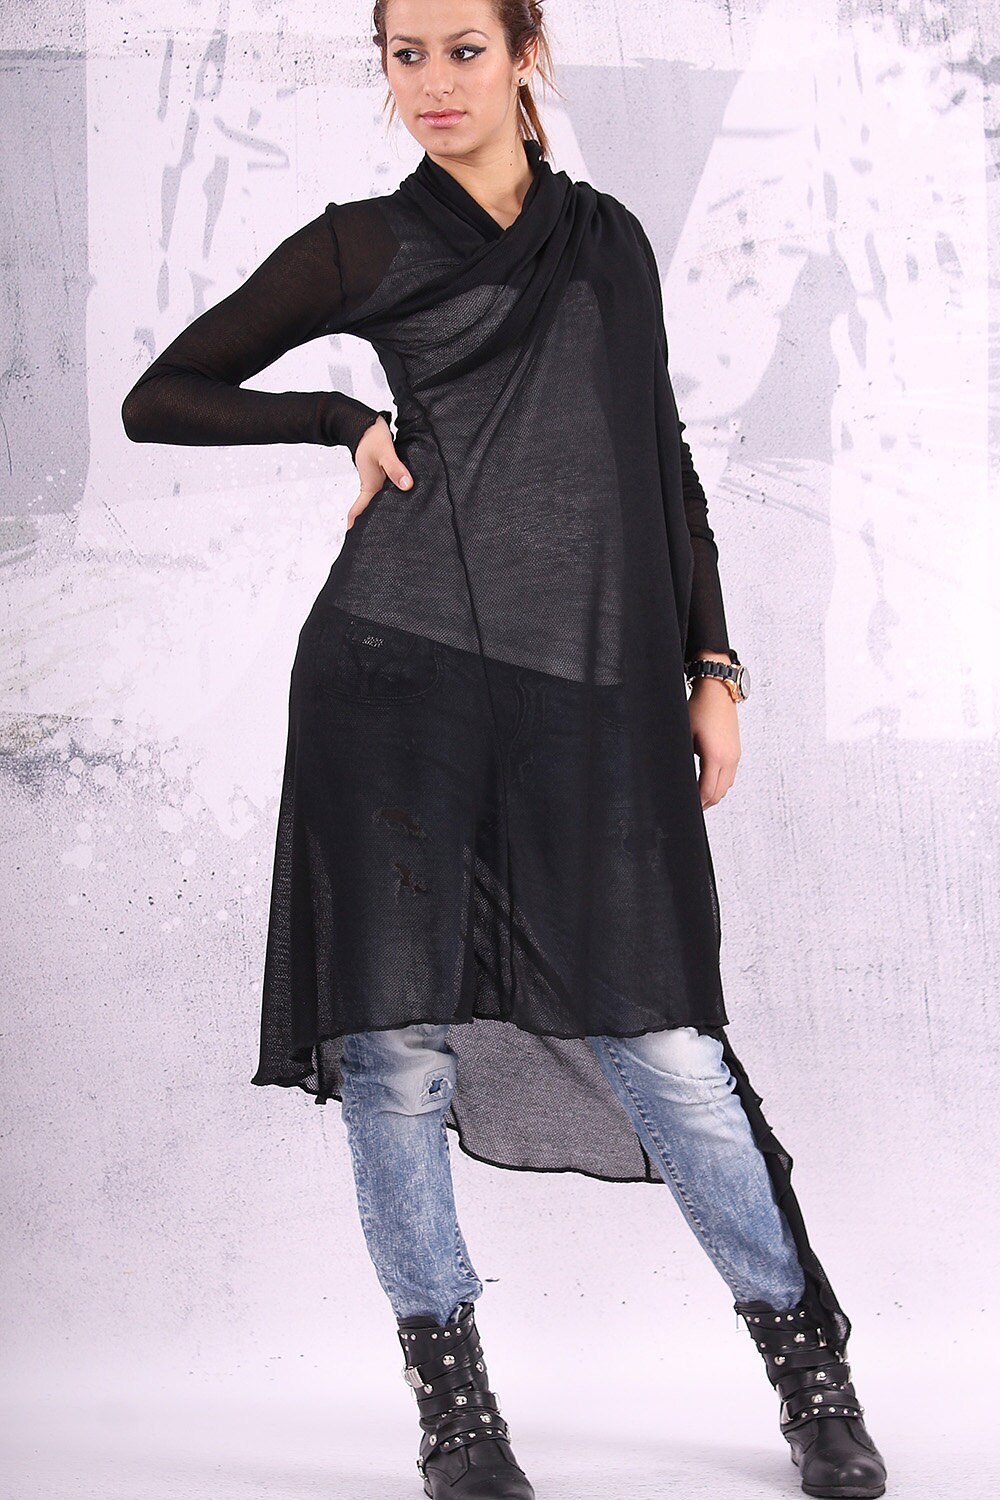 Long vest/ knit cotton top/ asymmetric black vest/ long | Etsy